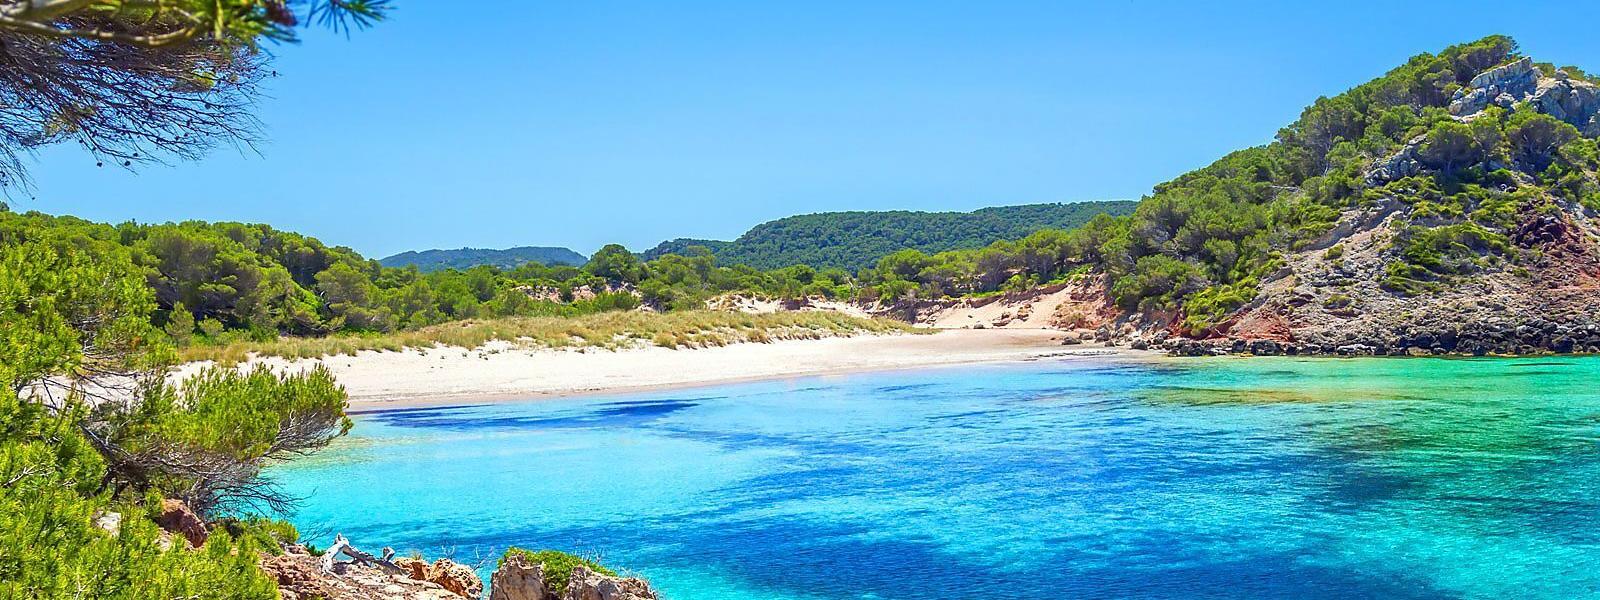 Ferienhäuser und Ferienwohnungen Menorca - e-domizil